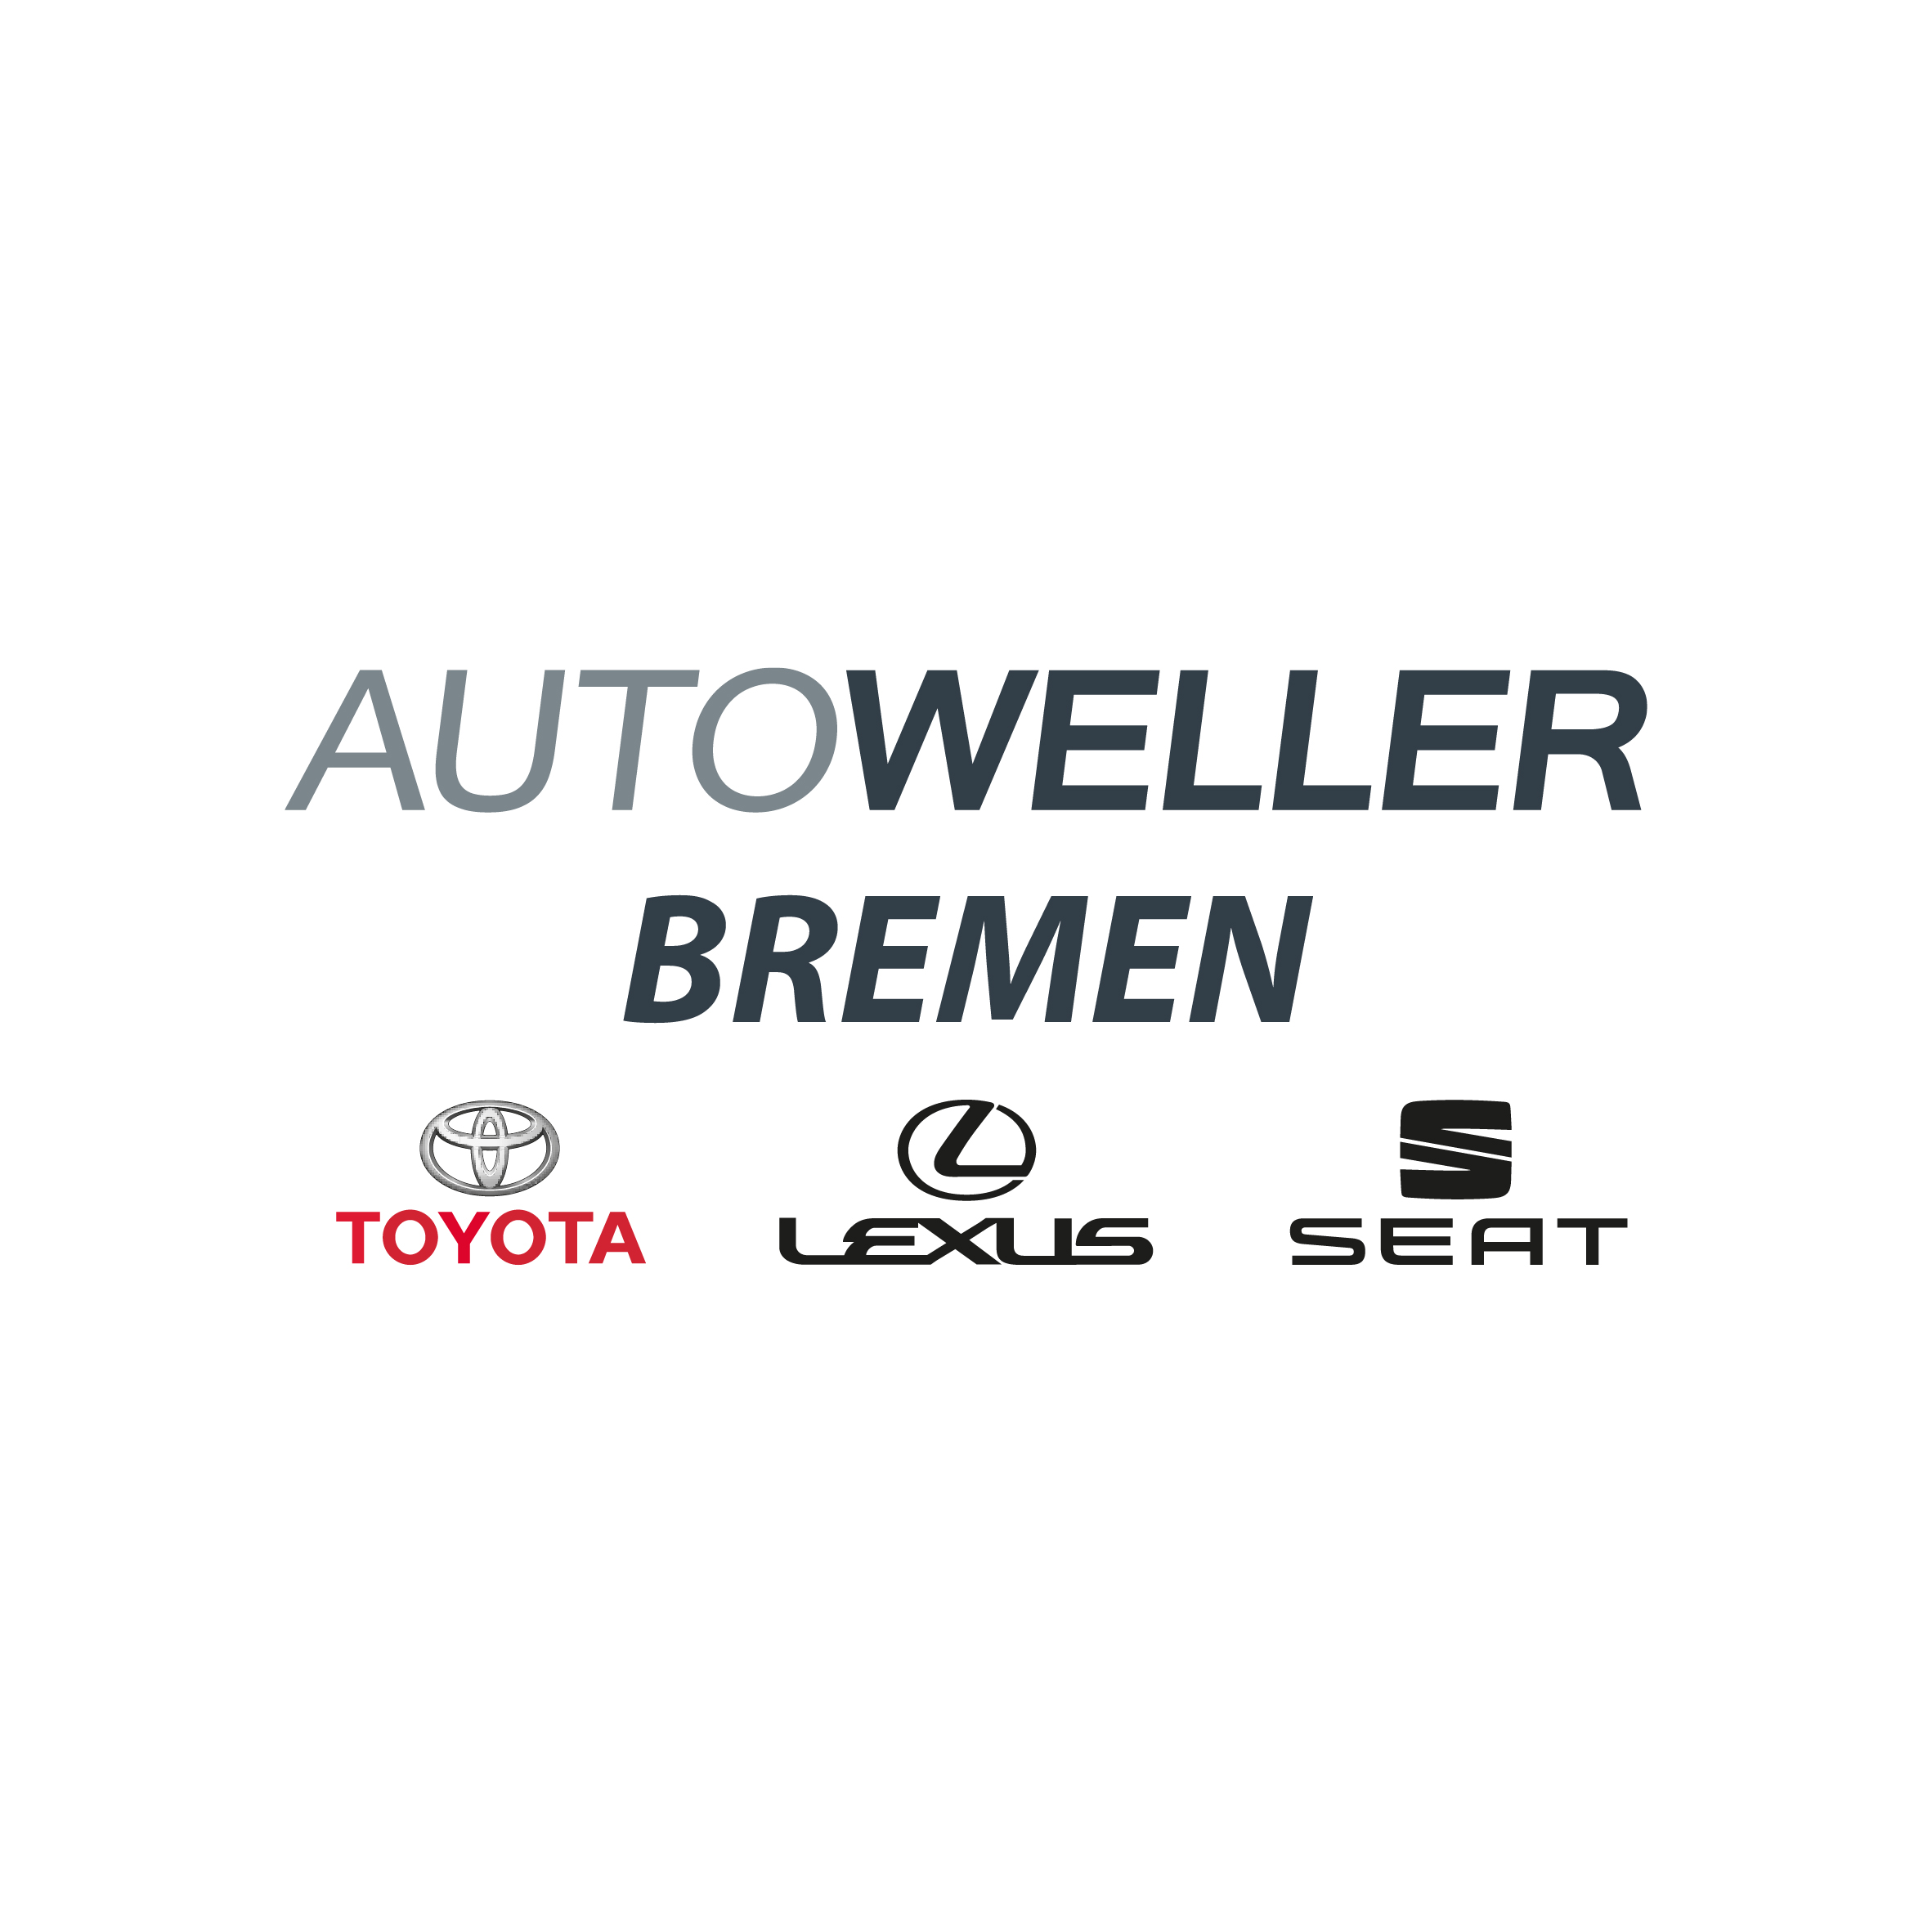 AUTOWELLER GmbH & Co. KG